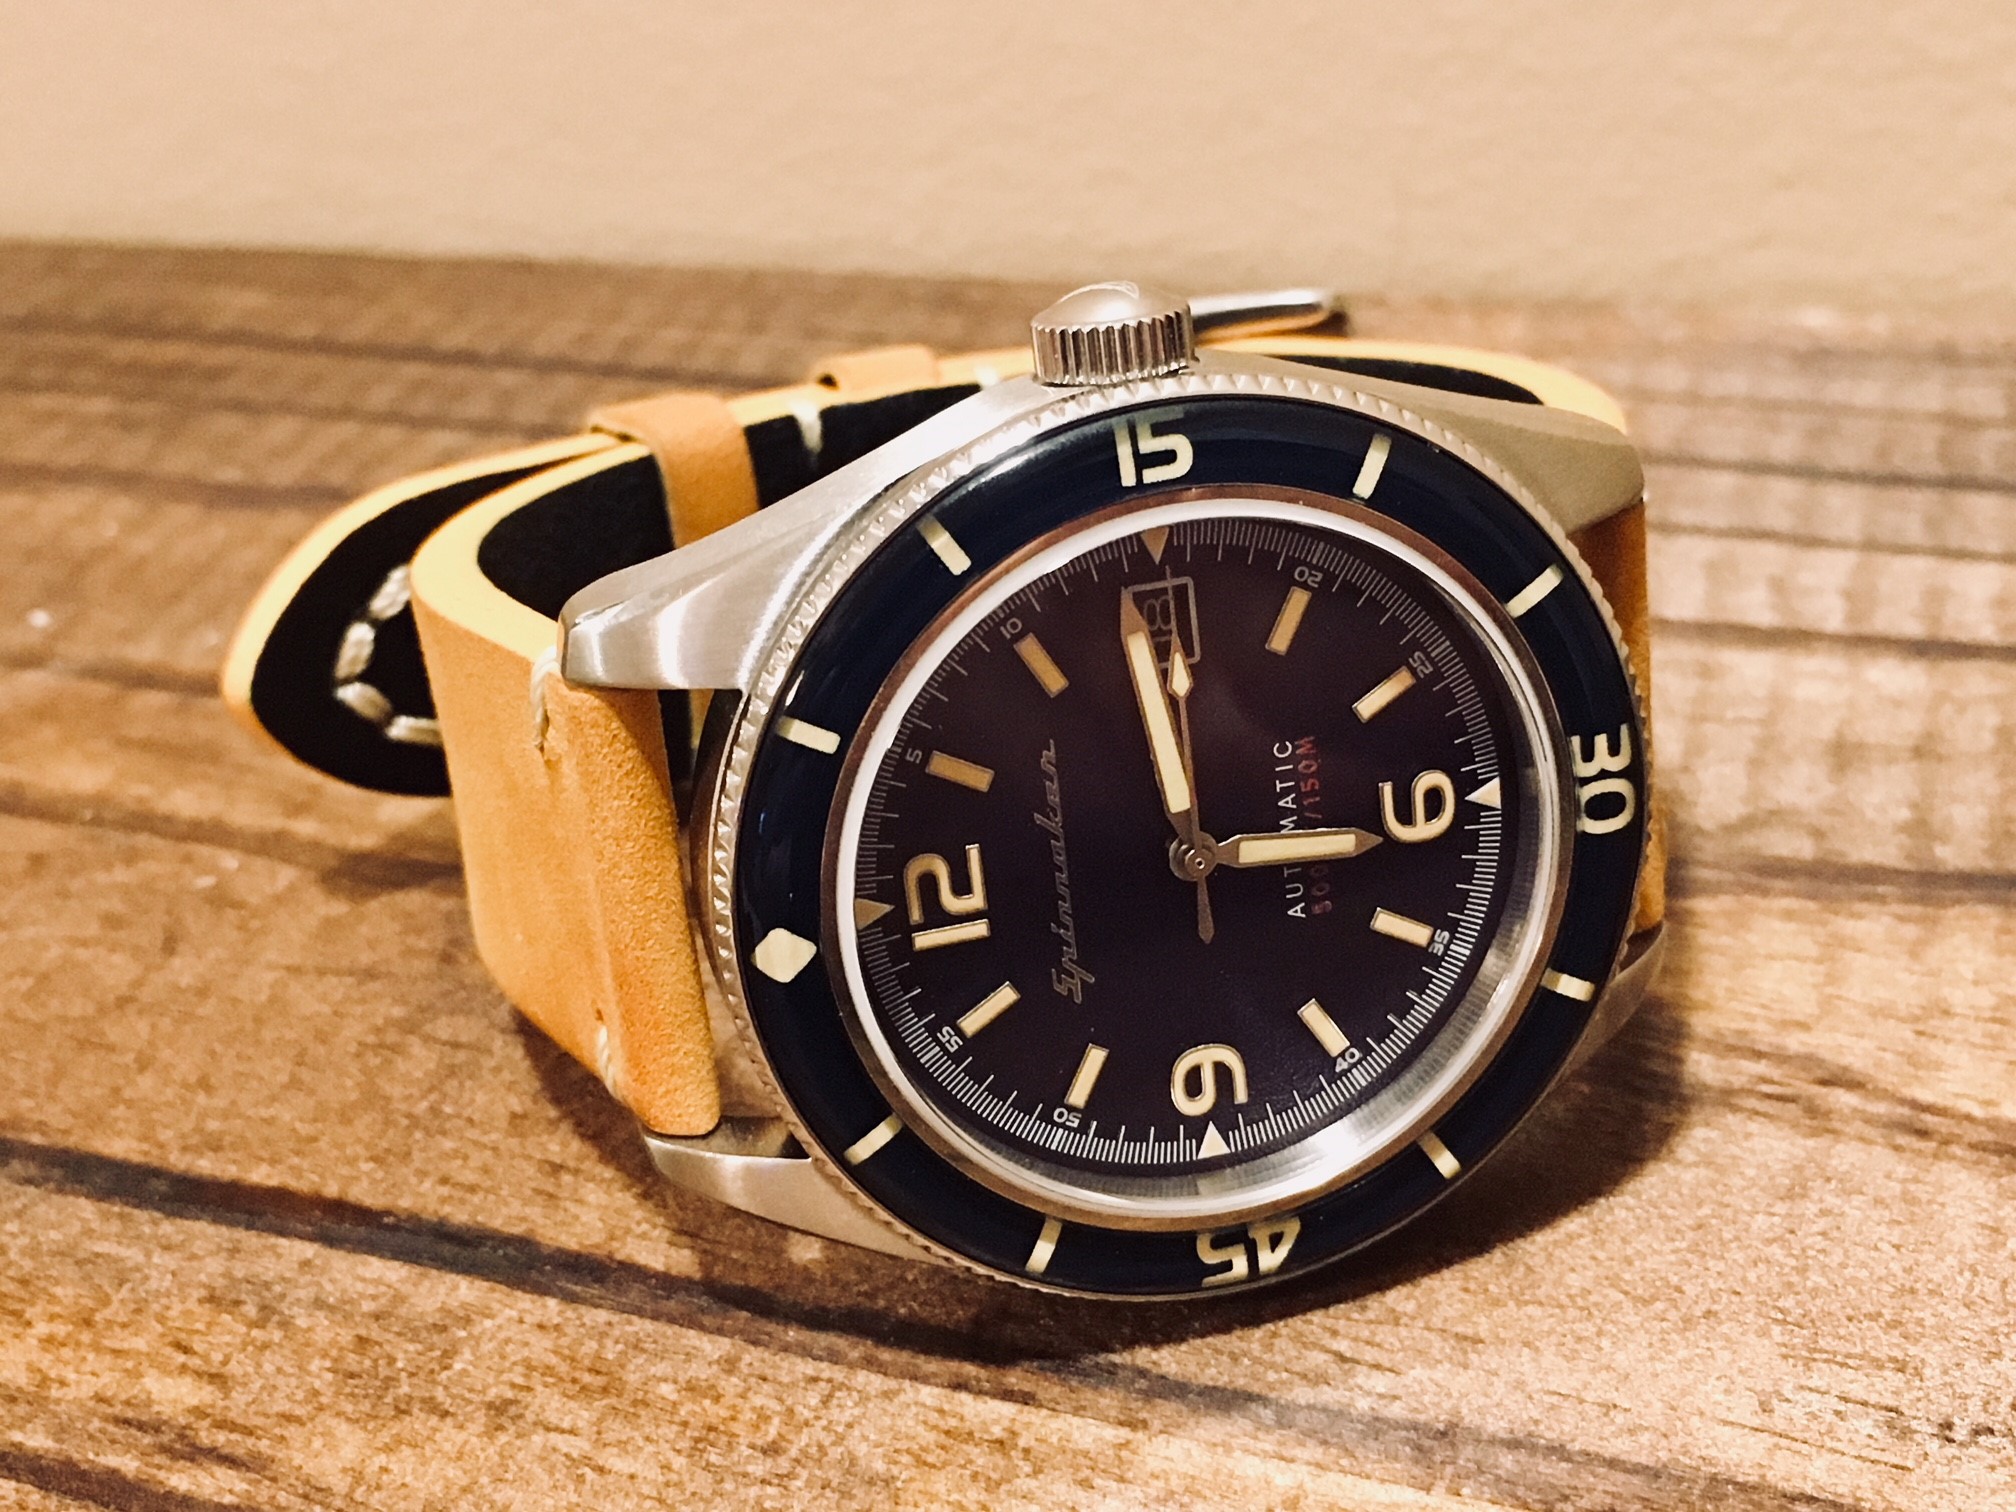 Spinnaker Fleuss SP-5055 provides an affordable vintage dive watch ...